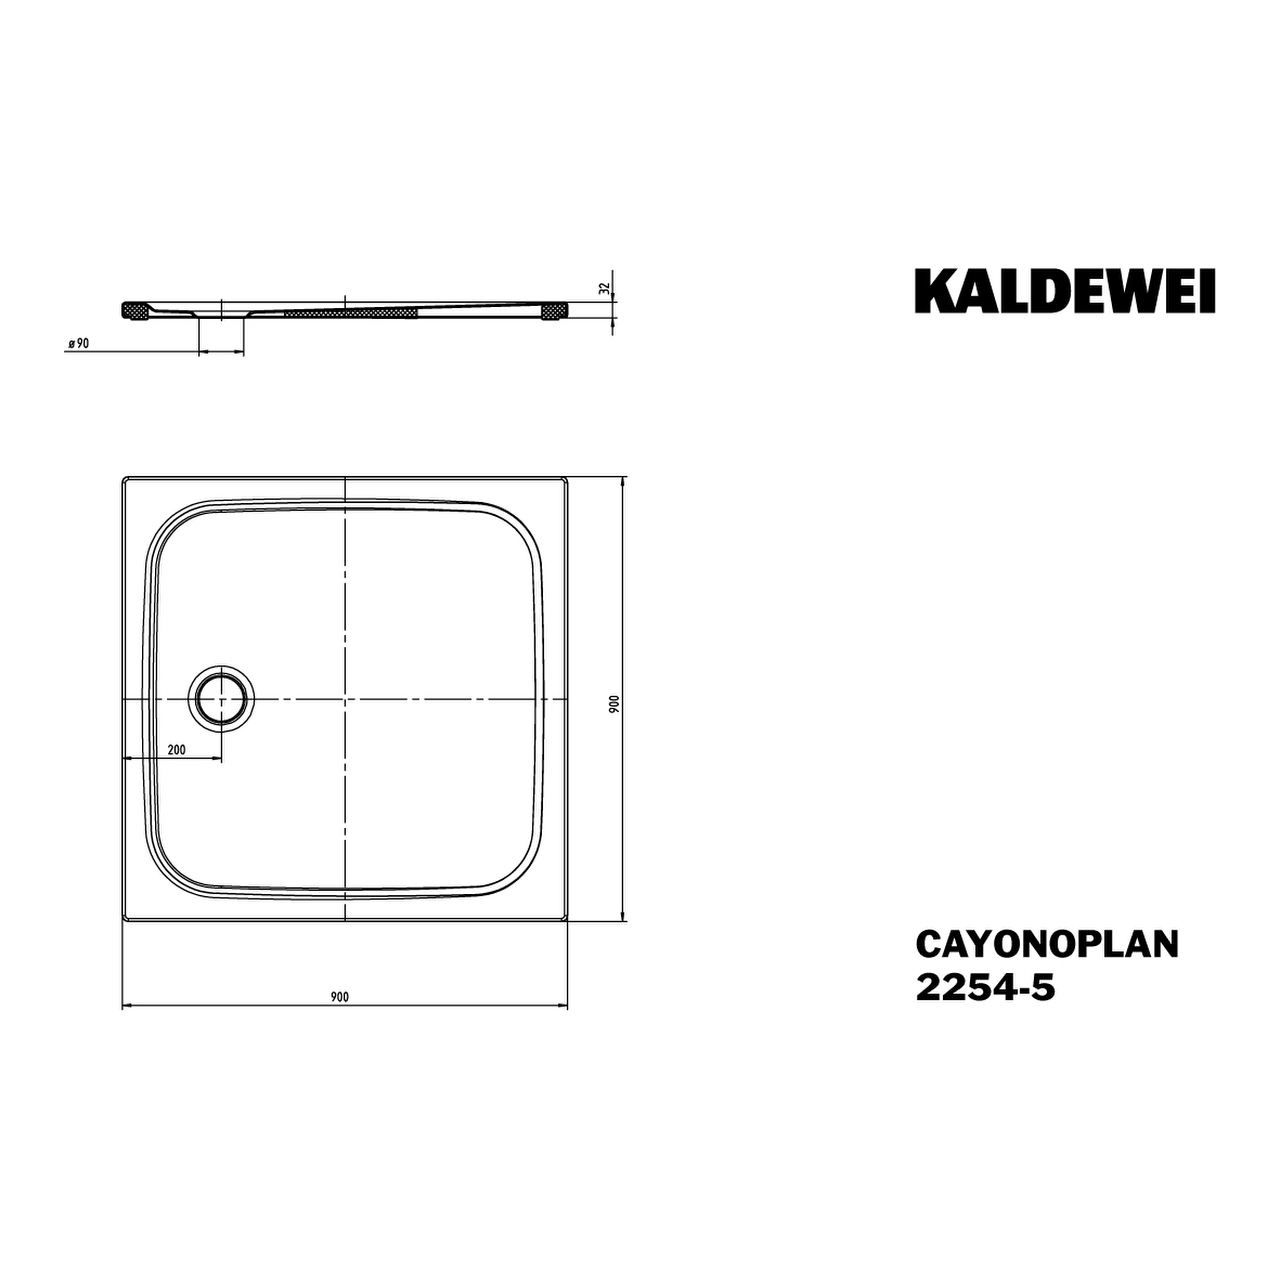 Kaldewei quadrat Duschwanne „Cayonoplan“ 90 × 90 cm in schwarz mit Vollantislip